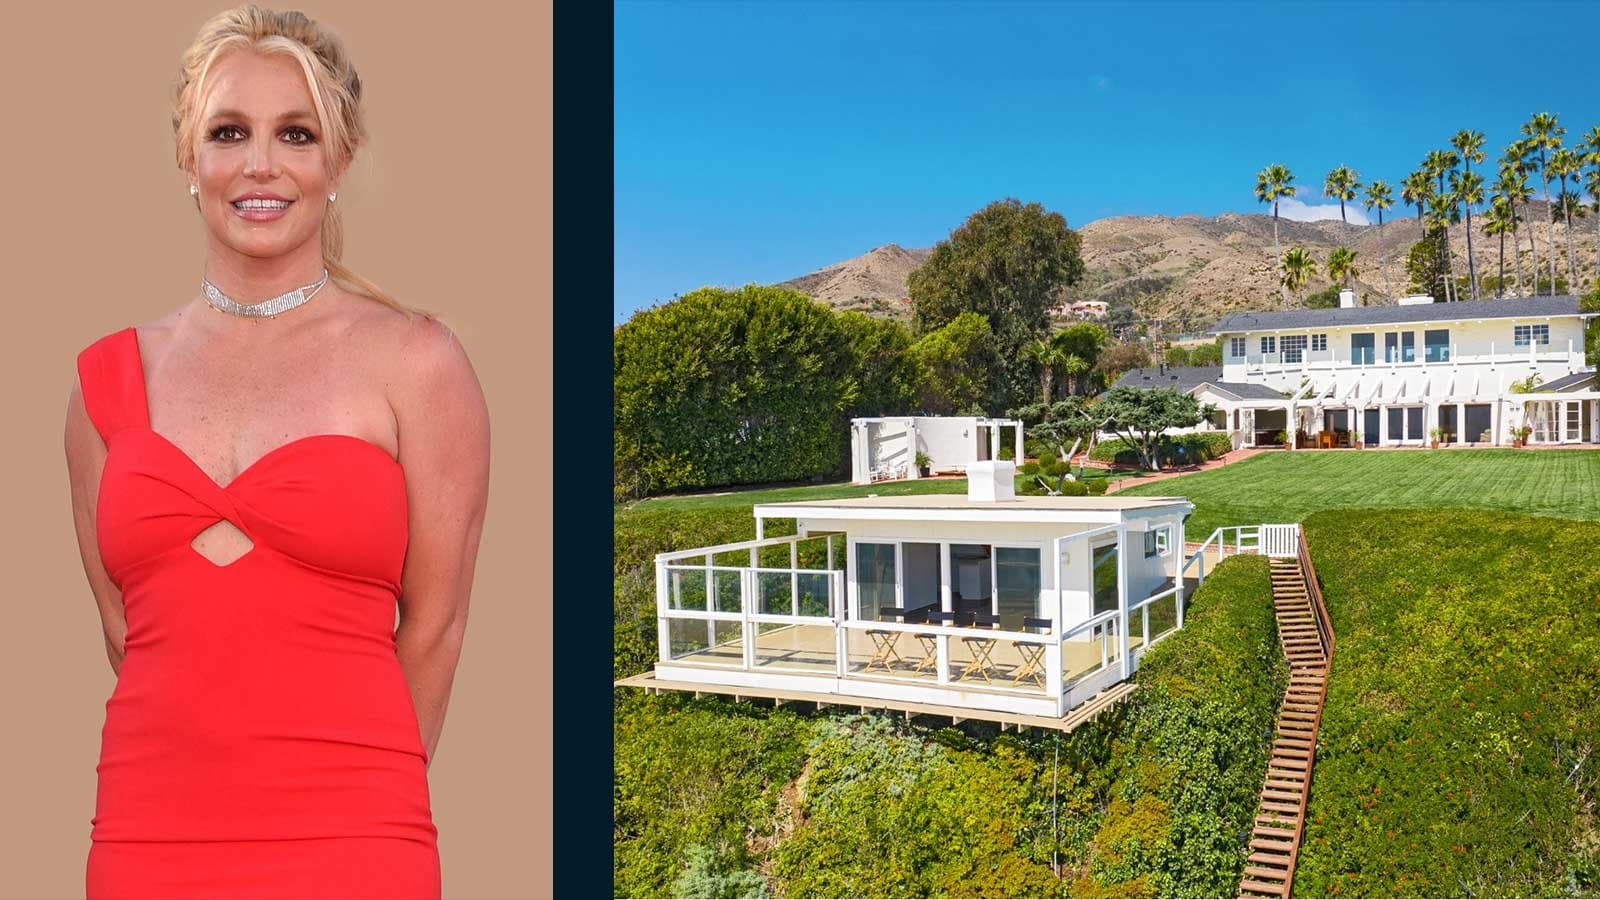 Dinh thự tại Malibu trong MV “Sometimes” của Britney Spears có giá 44,5 triệu USD